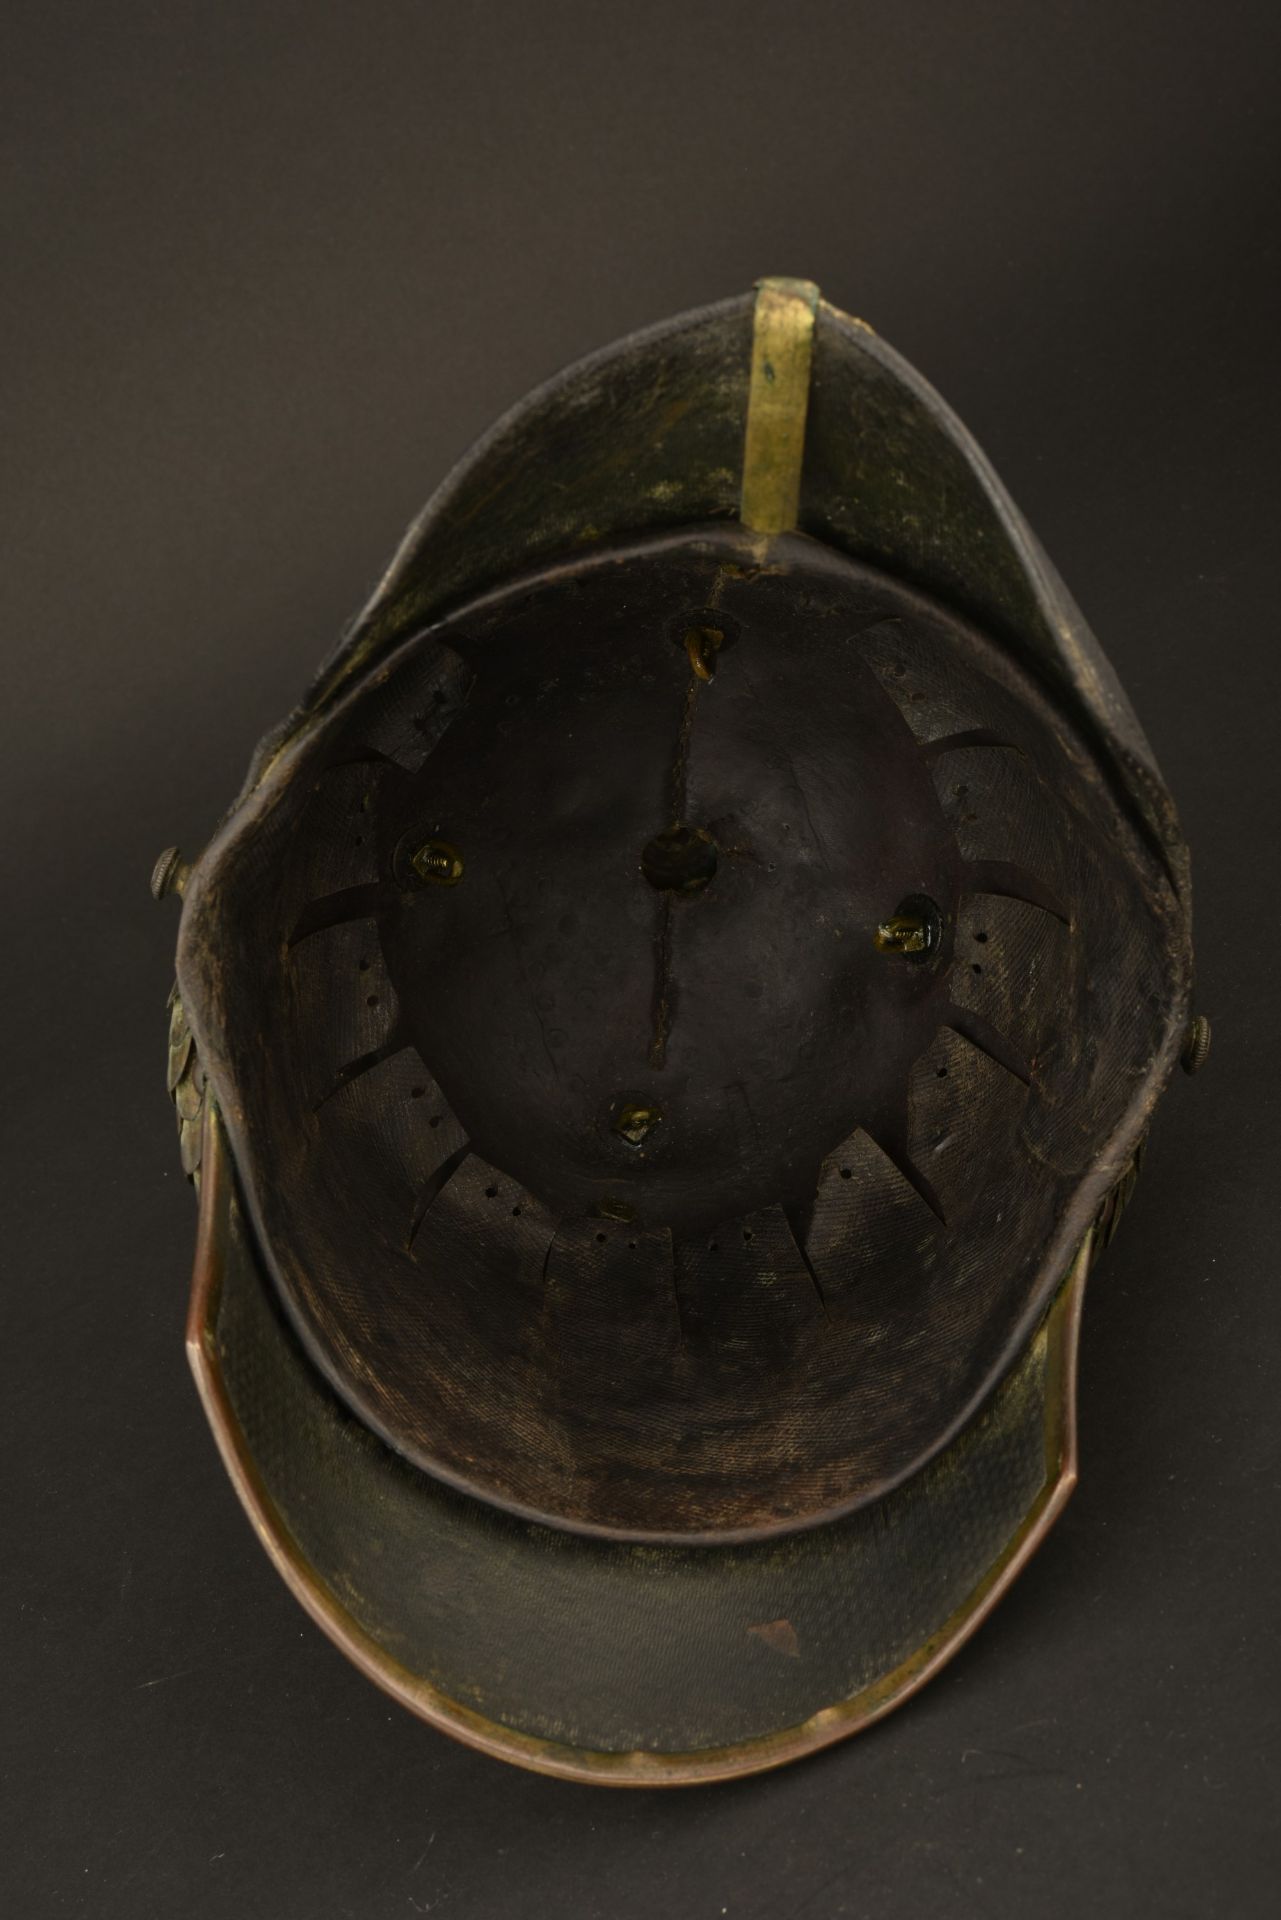 Casque d officier modele 1842 de la Garde. Scarce prussian guard pattern 1842 officer spiked helmet. - Image 3 of 4